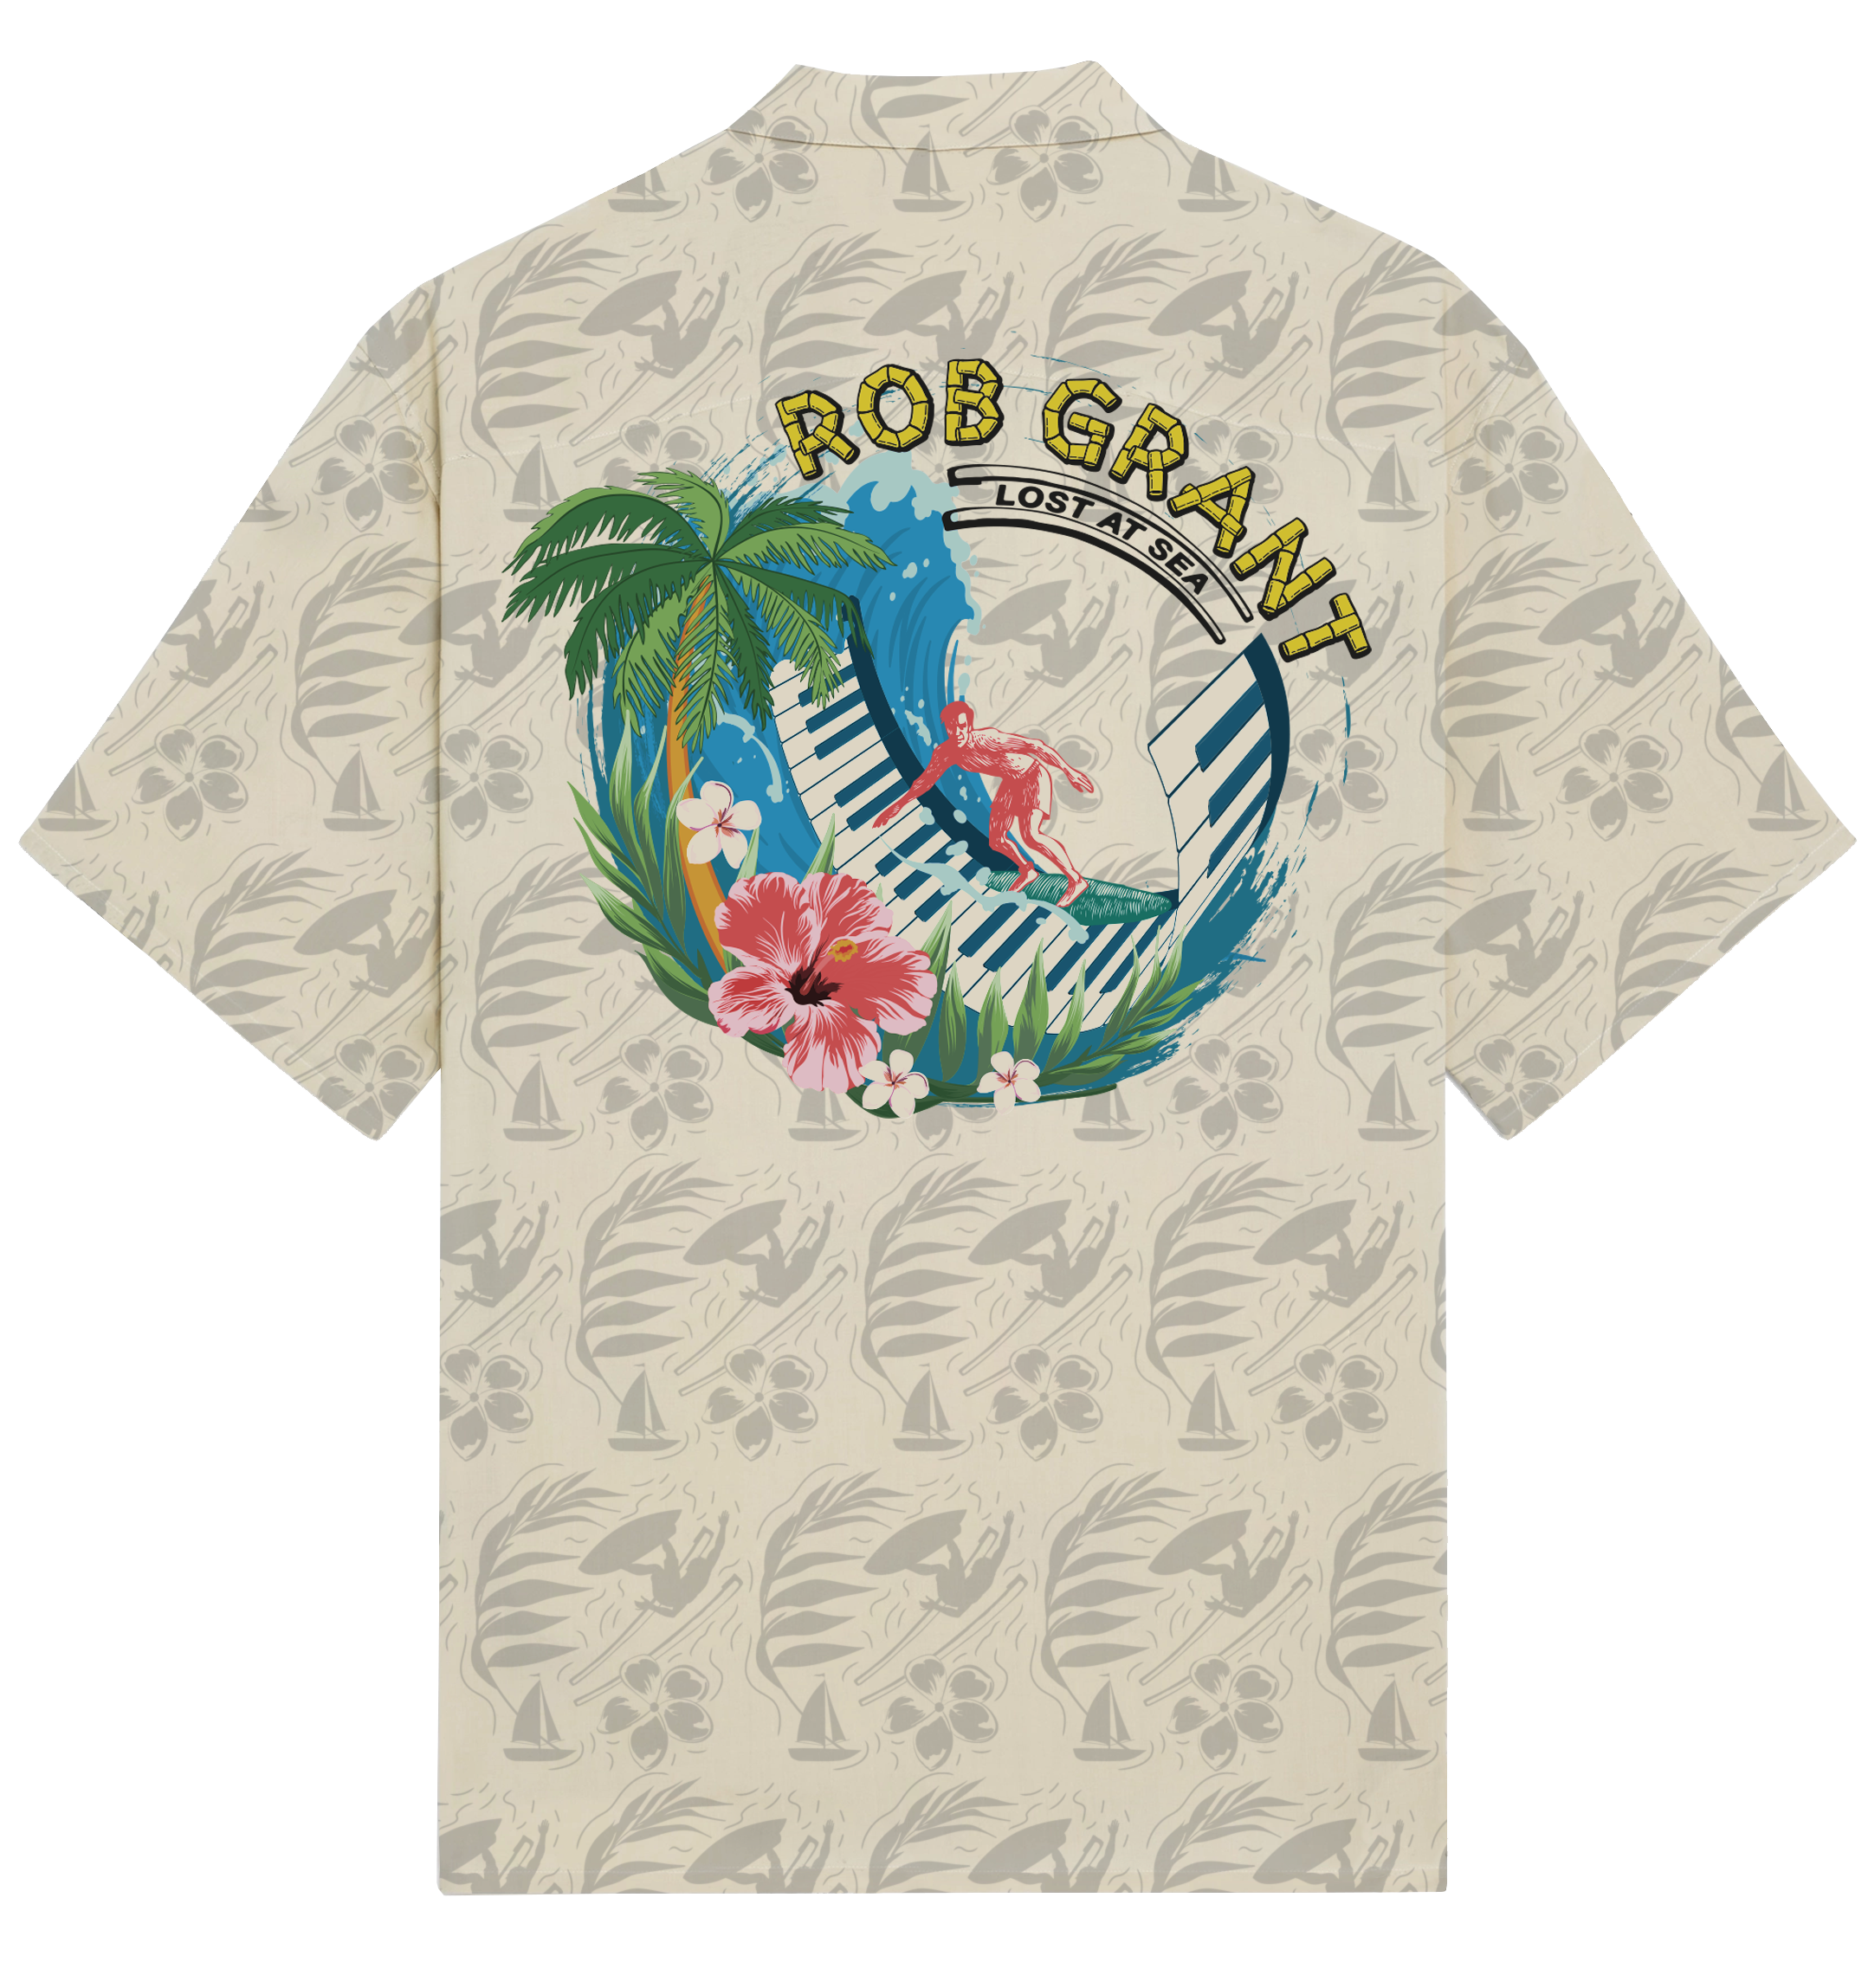 Rob Grant - Lost At Sea Hawaiian Shirt